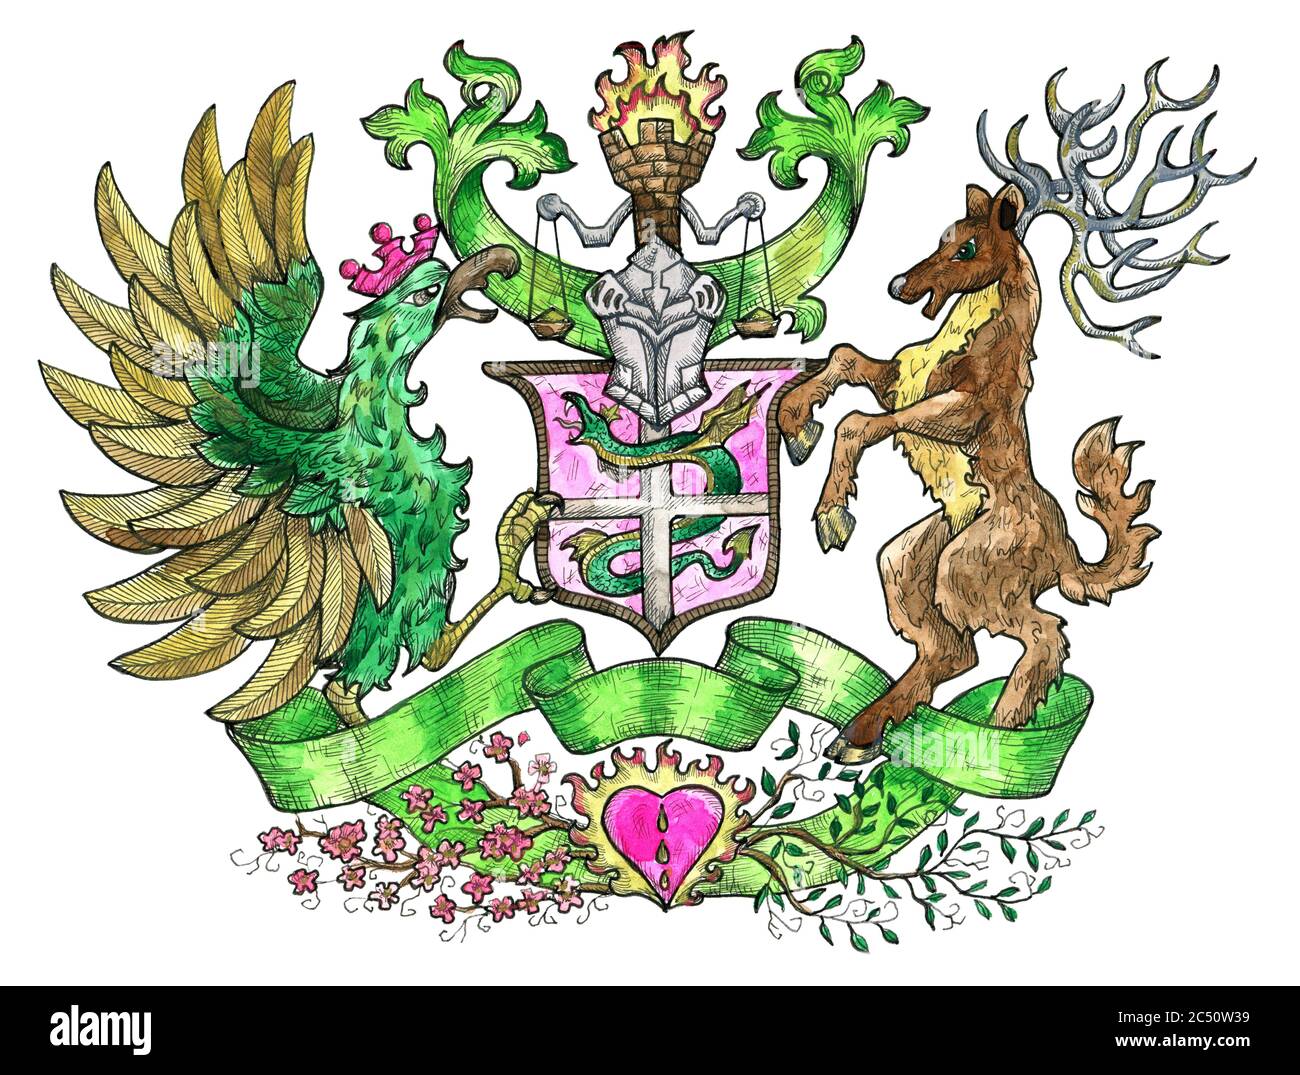 Buntes Wappentier-Emblem mit Hahn-Vogel und gehörnten Hirschen isoliert auf weiß. Bunt gravierte Illustration mit Mythologie und Fantasy-Kreaturen in o Stockfoto